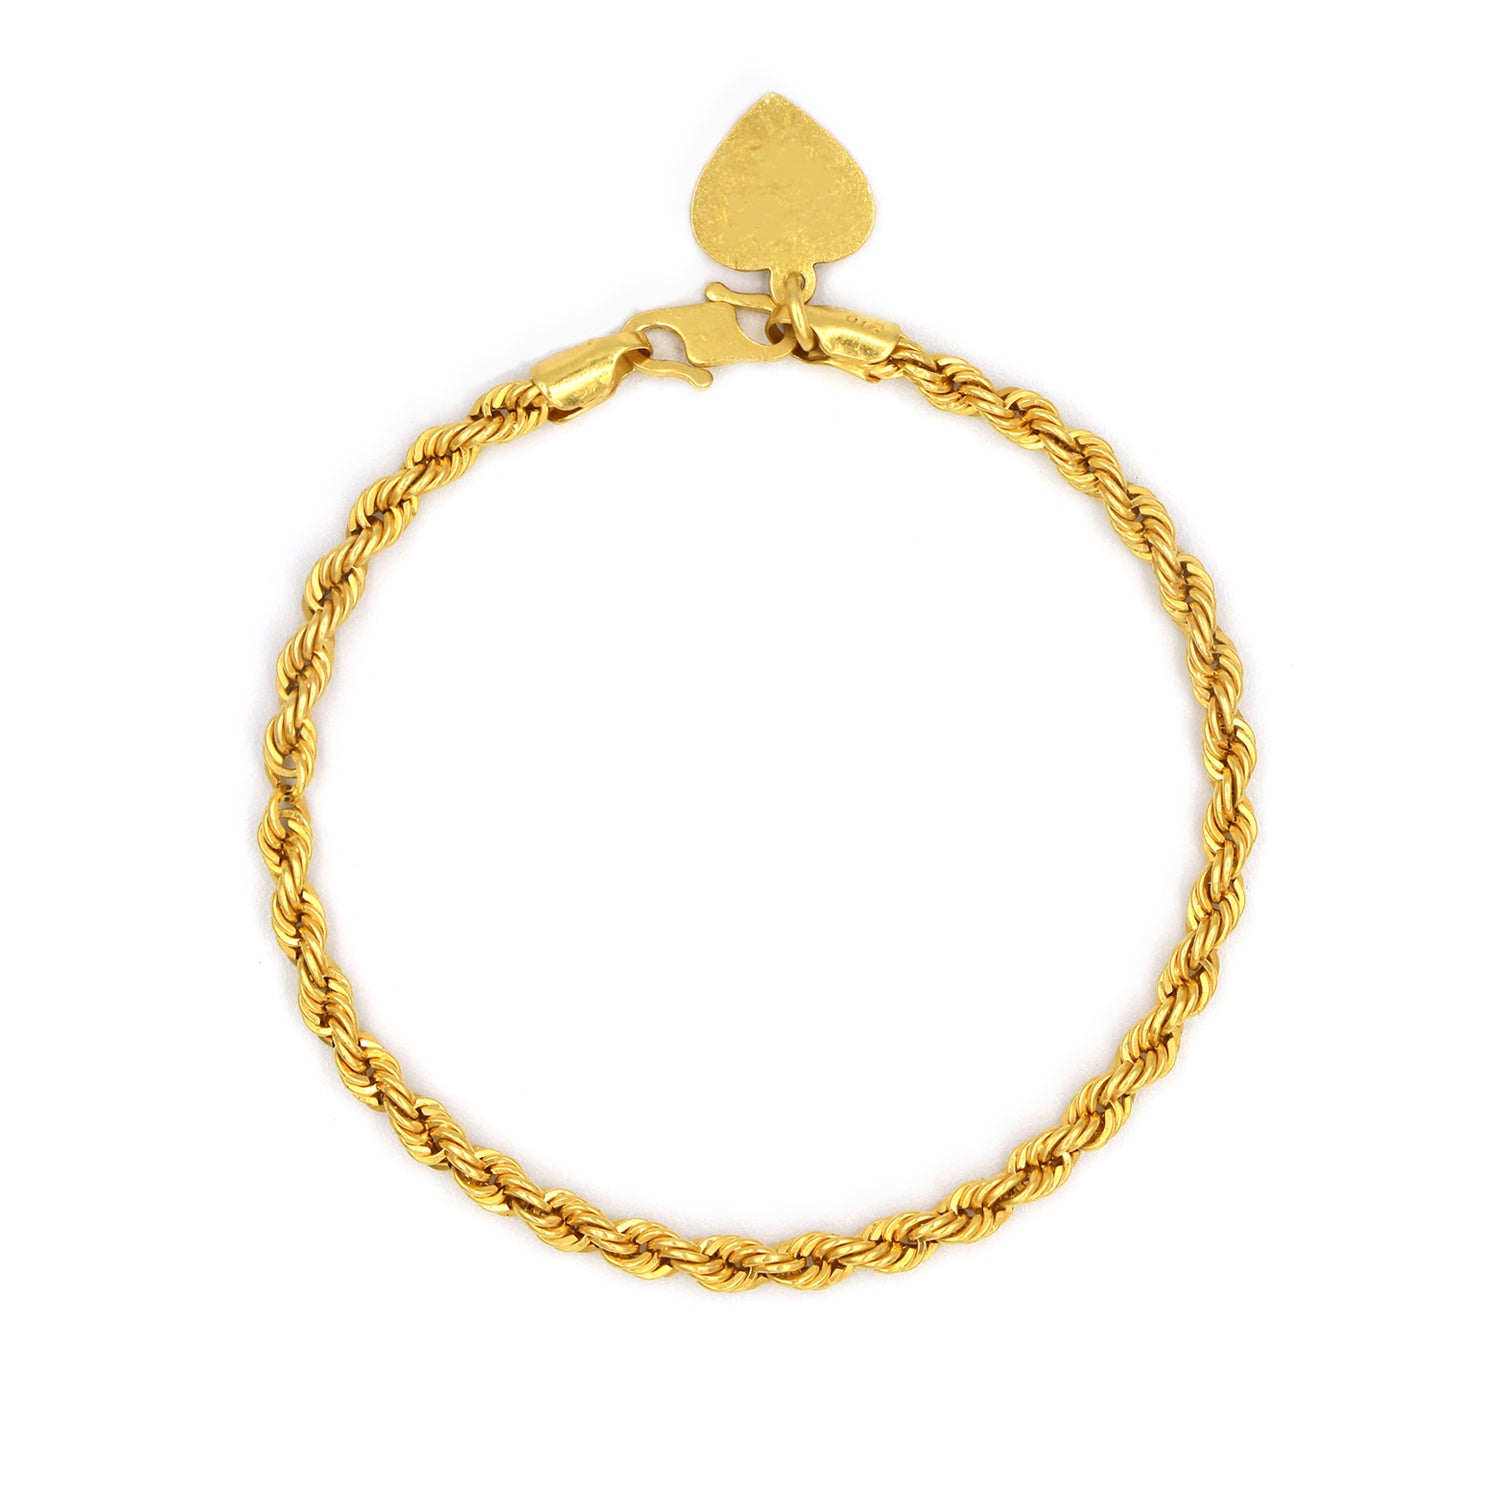 Qoo10 - 22k / 916 Gold Baby Bracelet : Watch & Jewelry